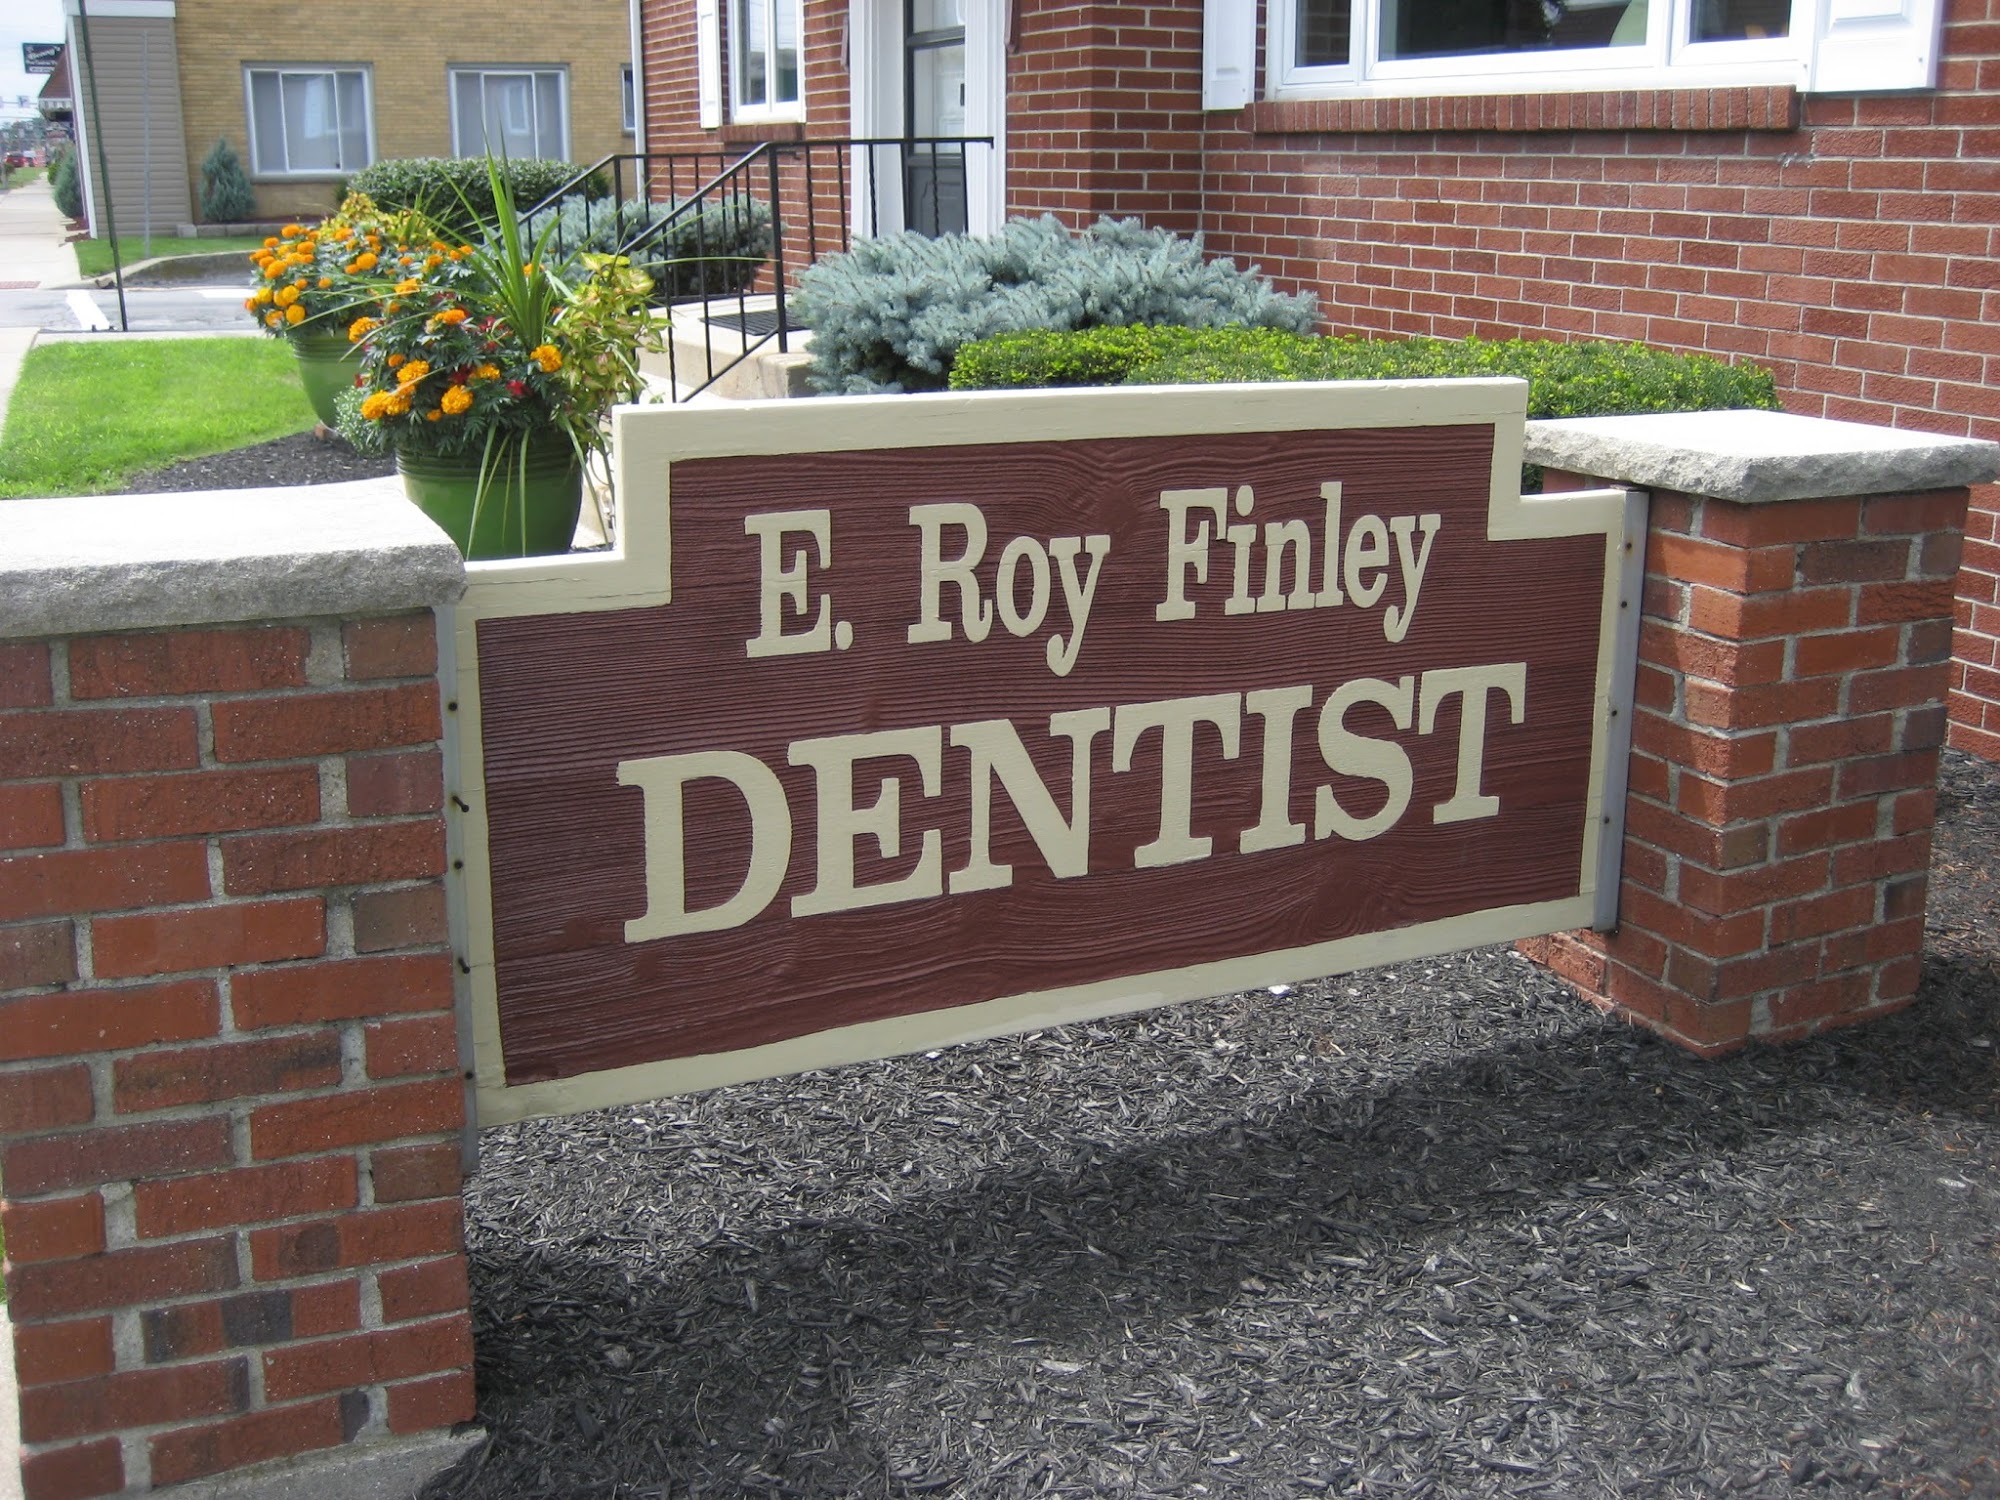 Finley Dentistry